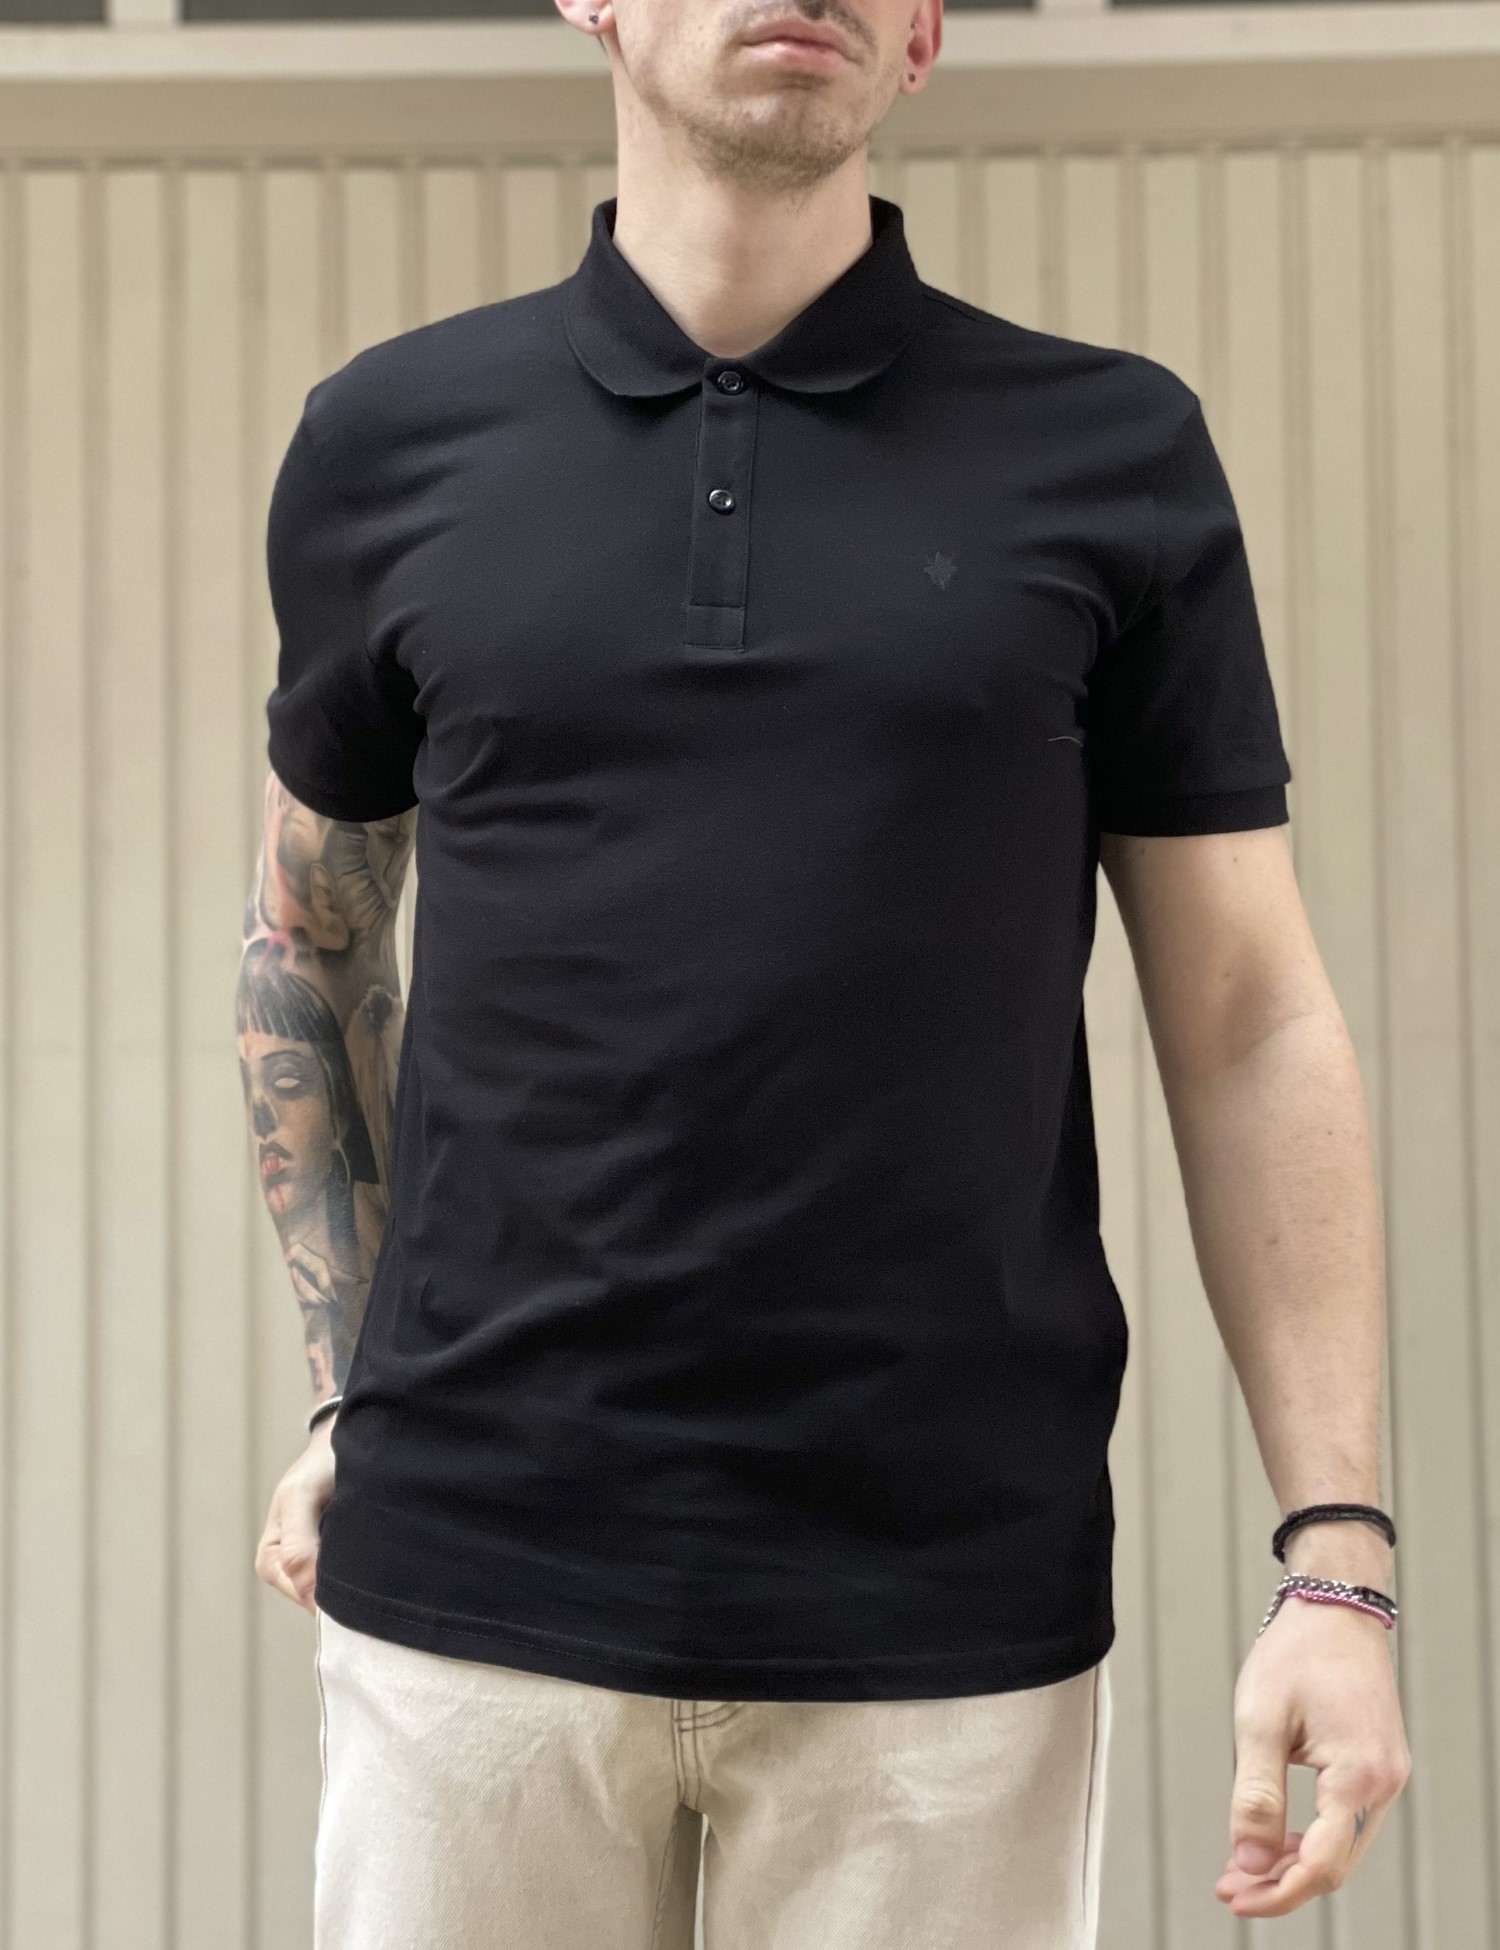 – Ανδρικη μαυρη βαμβακερη κοντομανικη μπλουζα Polo 4331